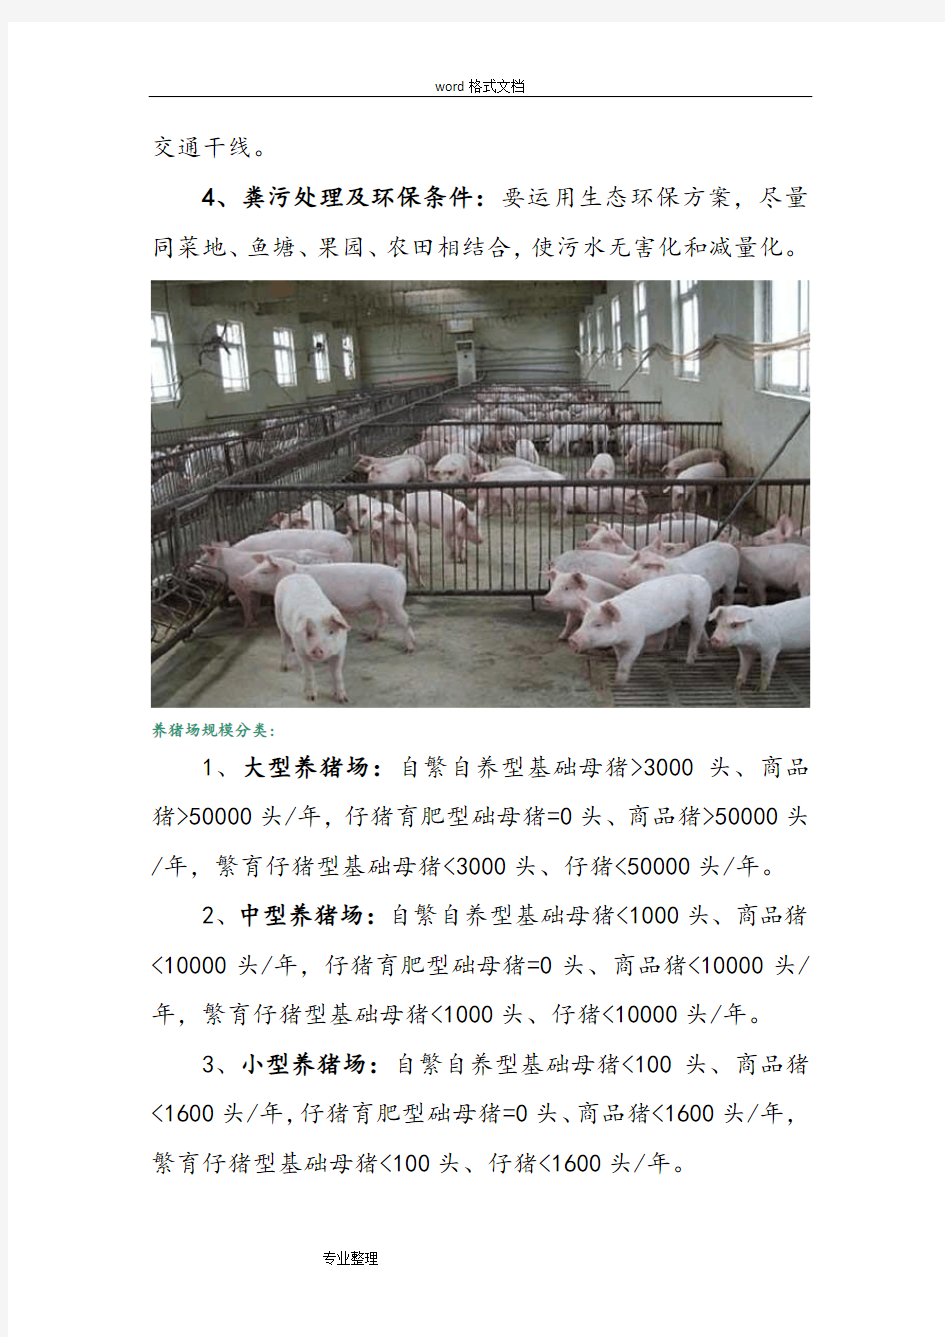 标准化养猪场建设方案详细